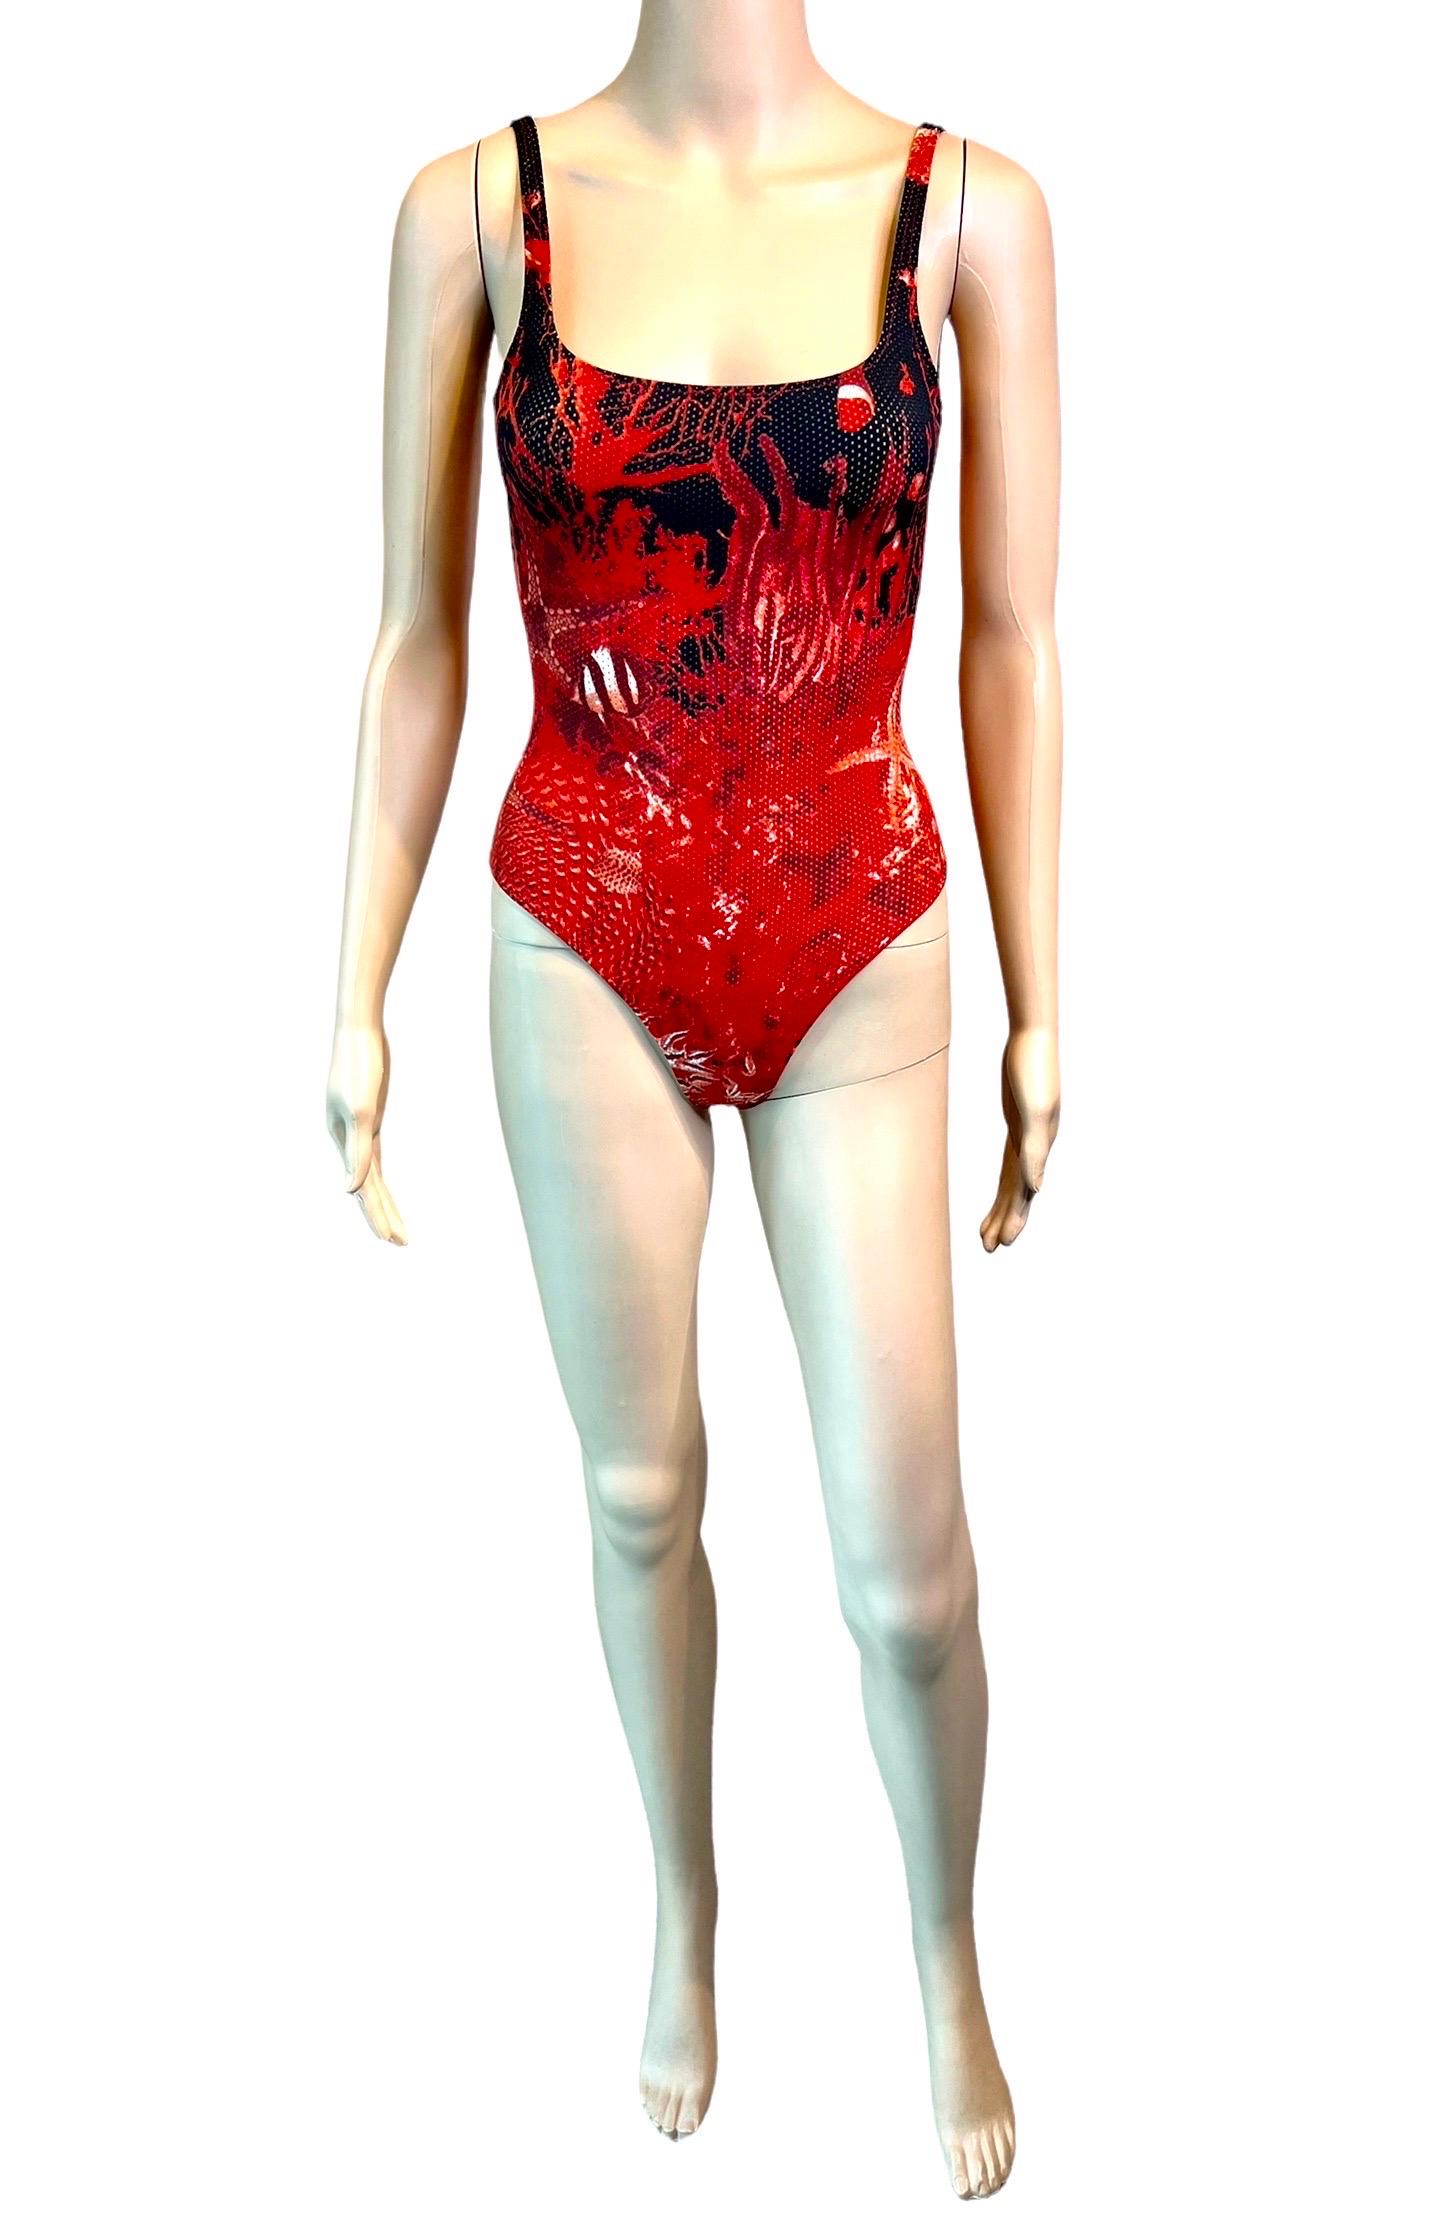 Red Jean Paul Gaultier Soleil S/S 1999 Sea Life Print Bodysuit Swimwear Swimsuit For Sale